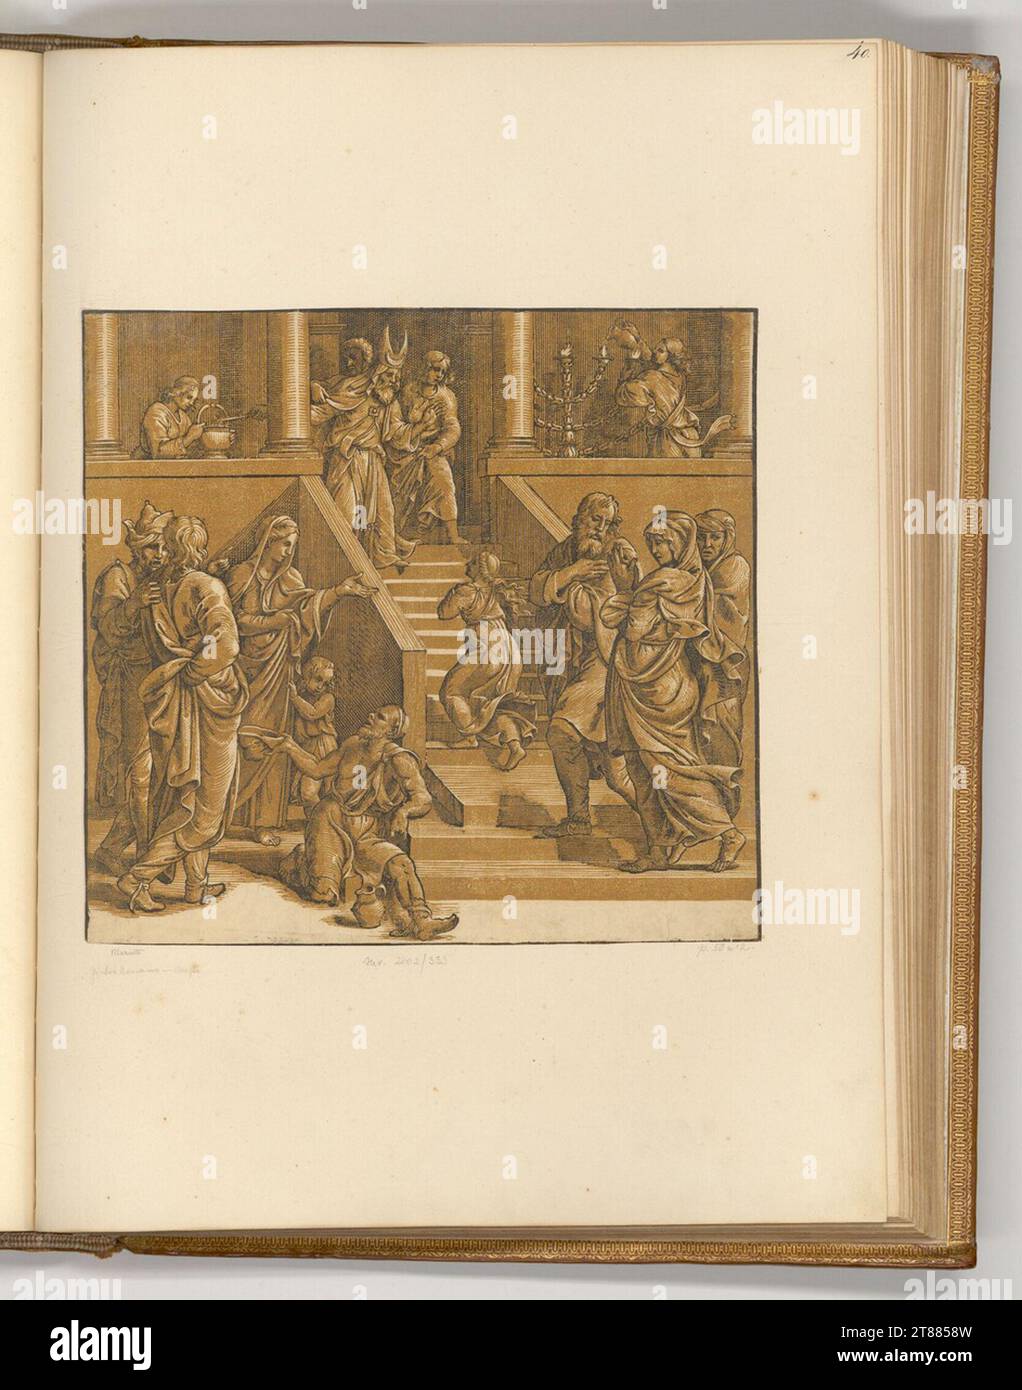 Niccolò Boldrini le temple passage de Marie. Clair OBSCUR gravure sur bois en deux planches (marron) Zweites Drittel 16. Century Banque D'Images